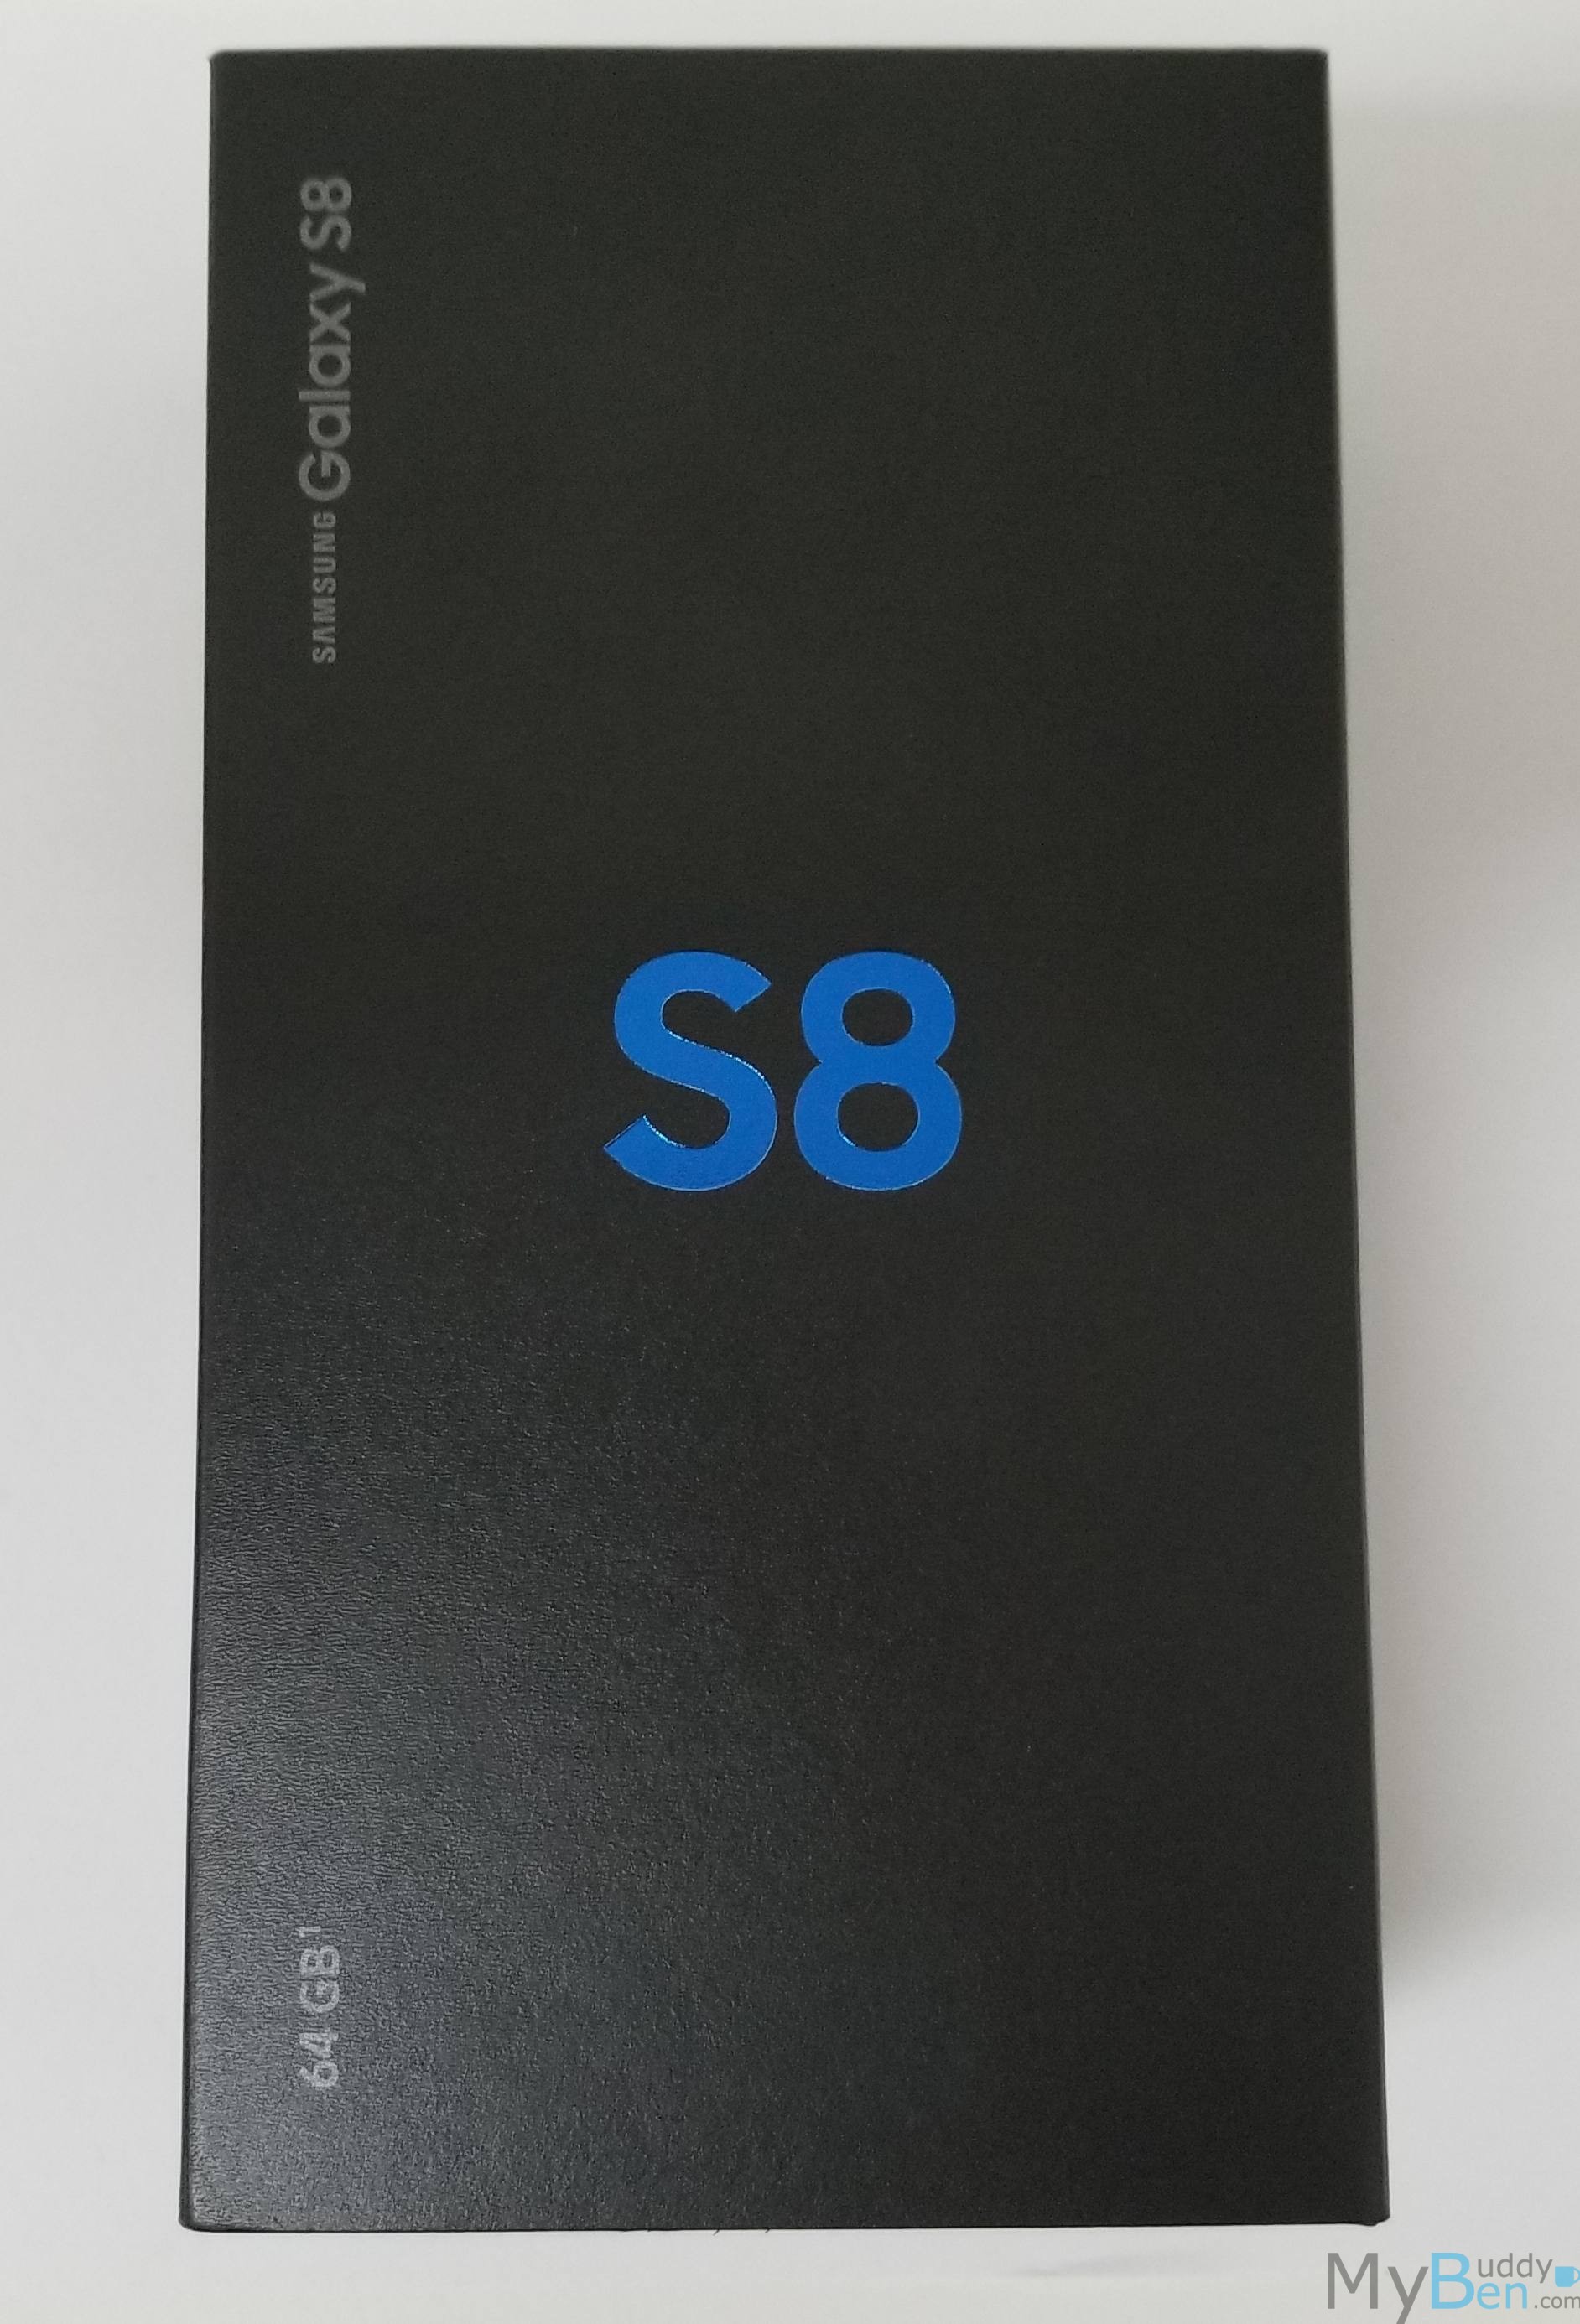 Galaxy S8 box